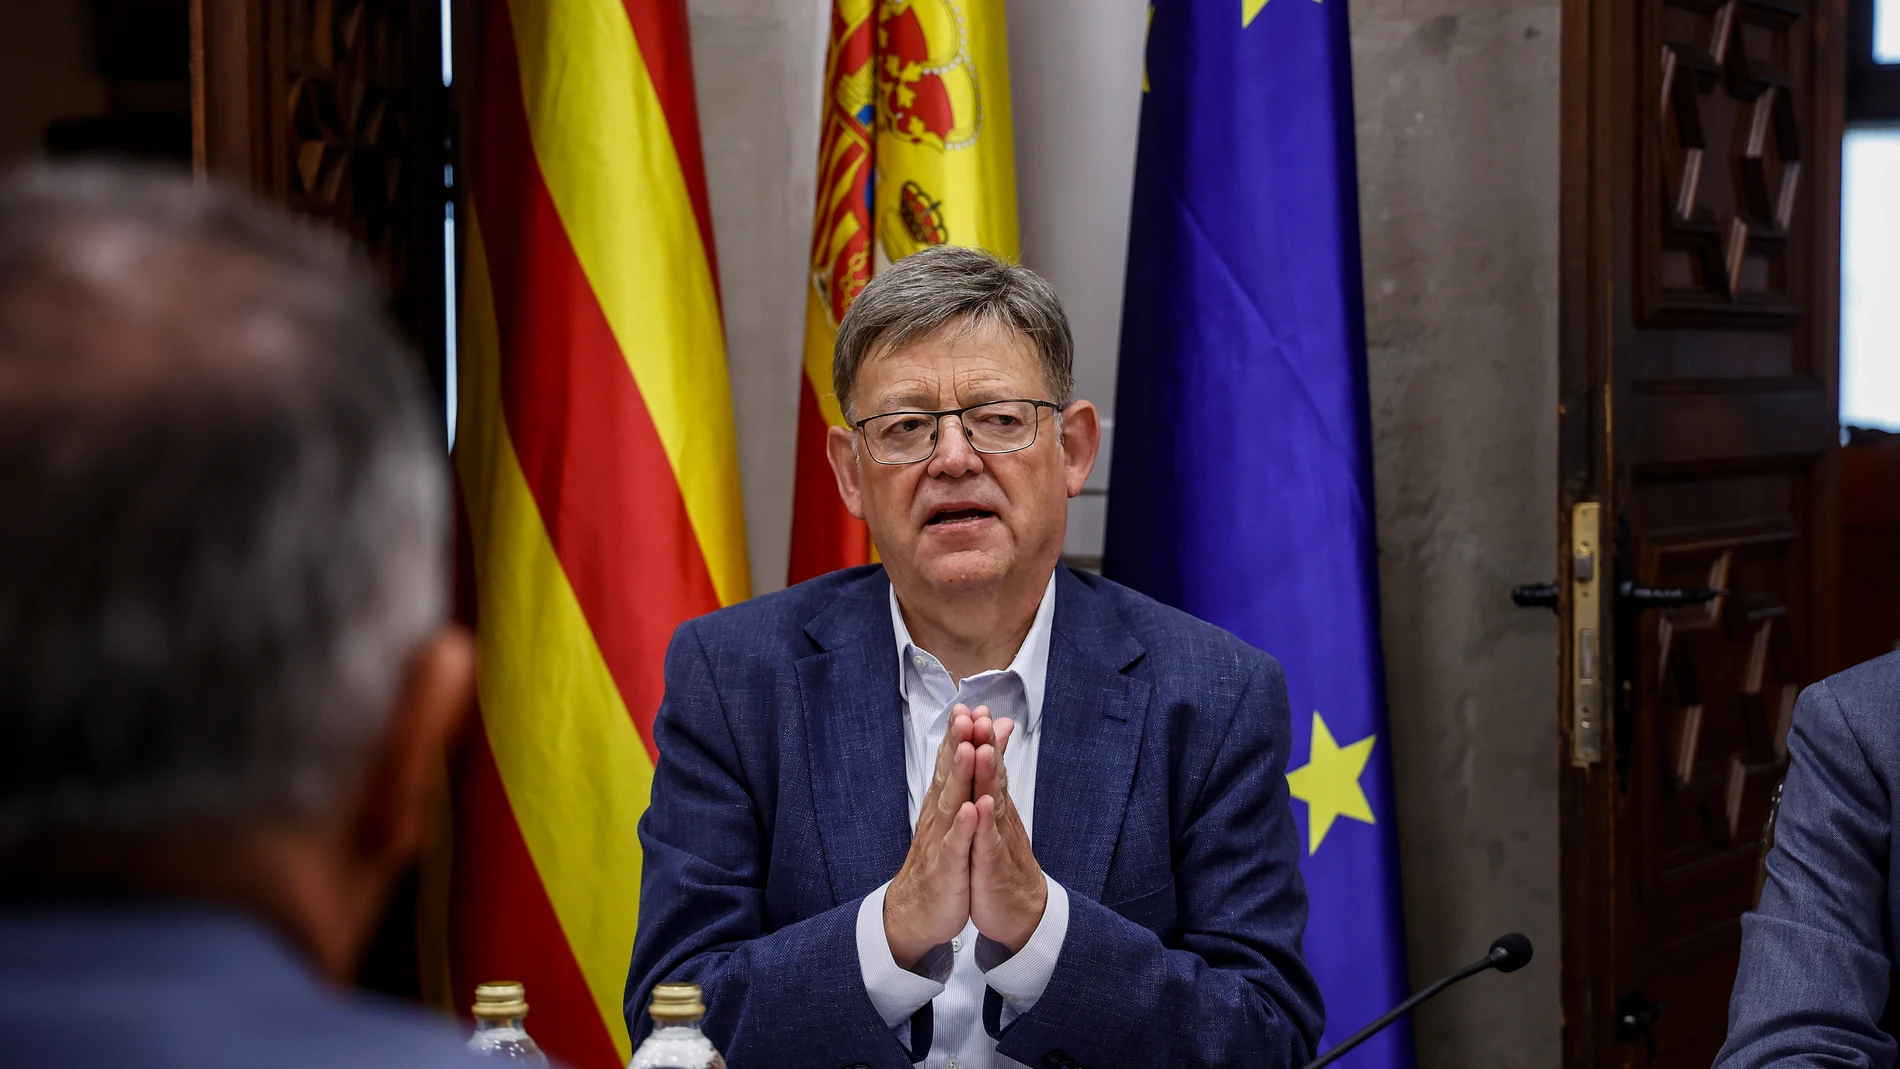 El president de la Generalitat Valenciana, Ximo Puig